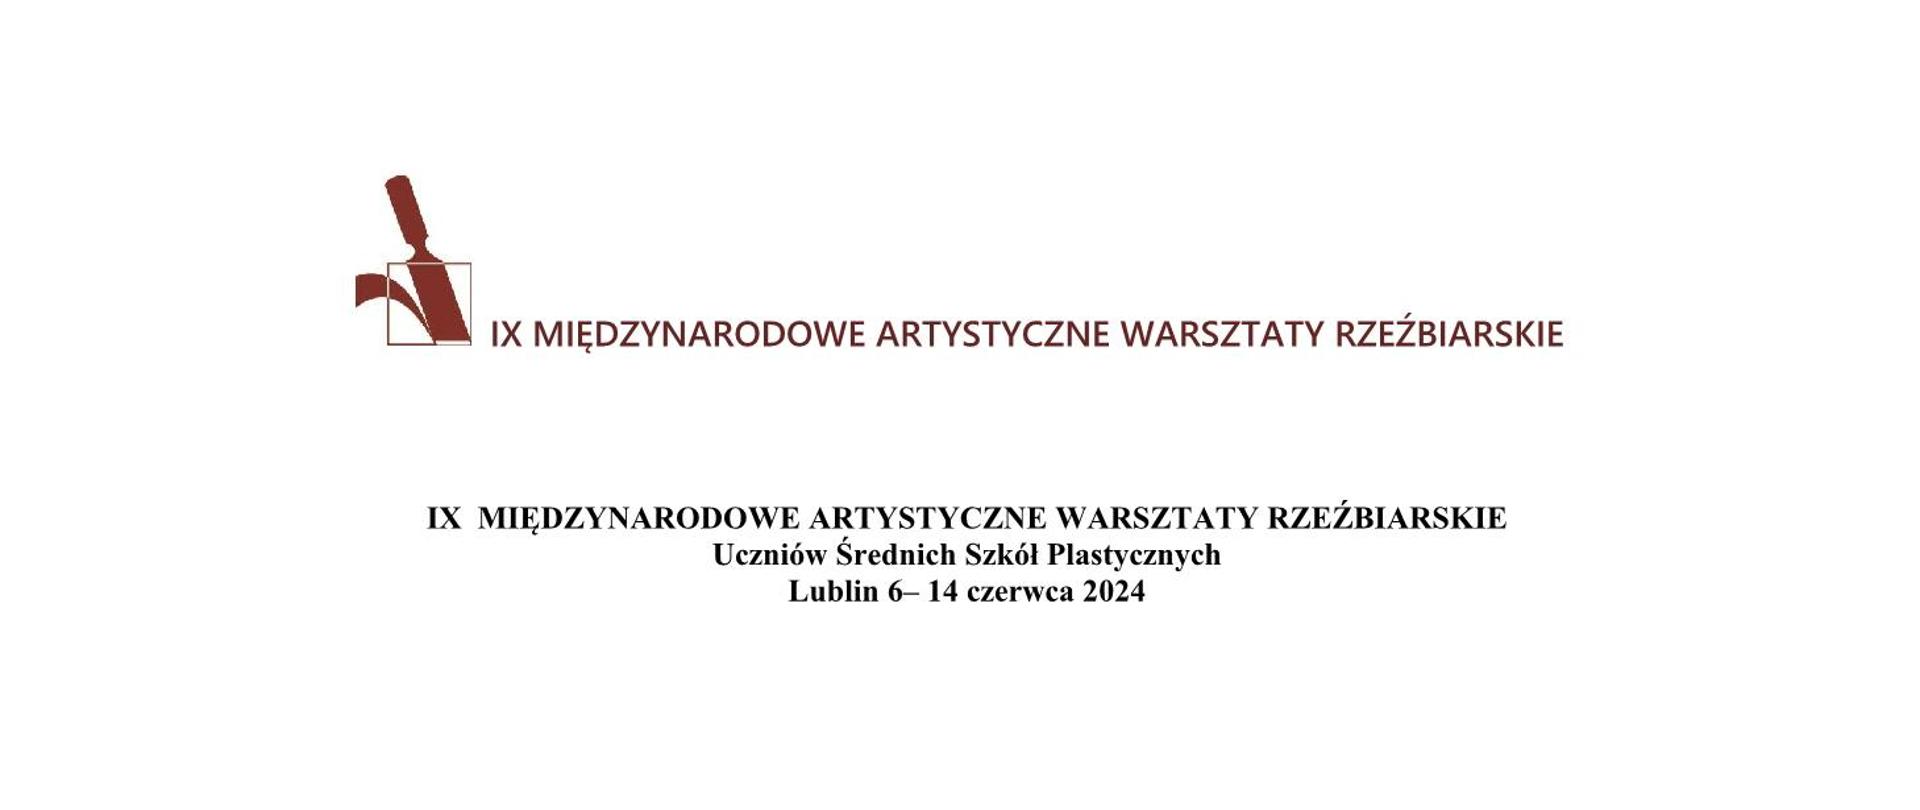 Logo warsztatów - dłuto. Napis IX Międzynarodowe Rzeźbiarskie Warsztaty Artystyczne Uczniów Średnich Szkół Plastycznych Lublin 6– 14 czerwca 2024
